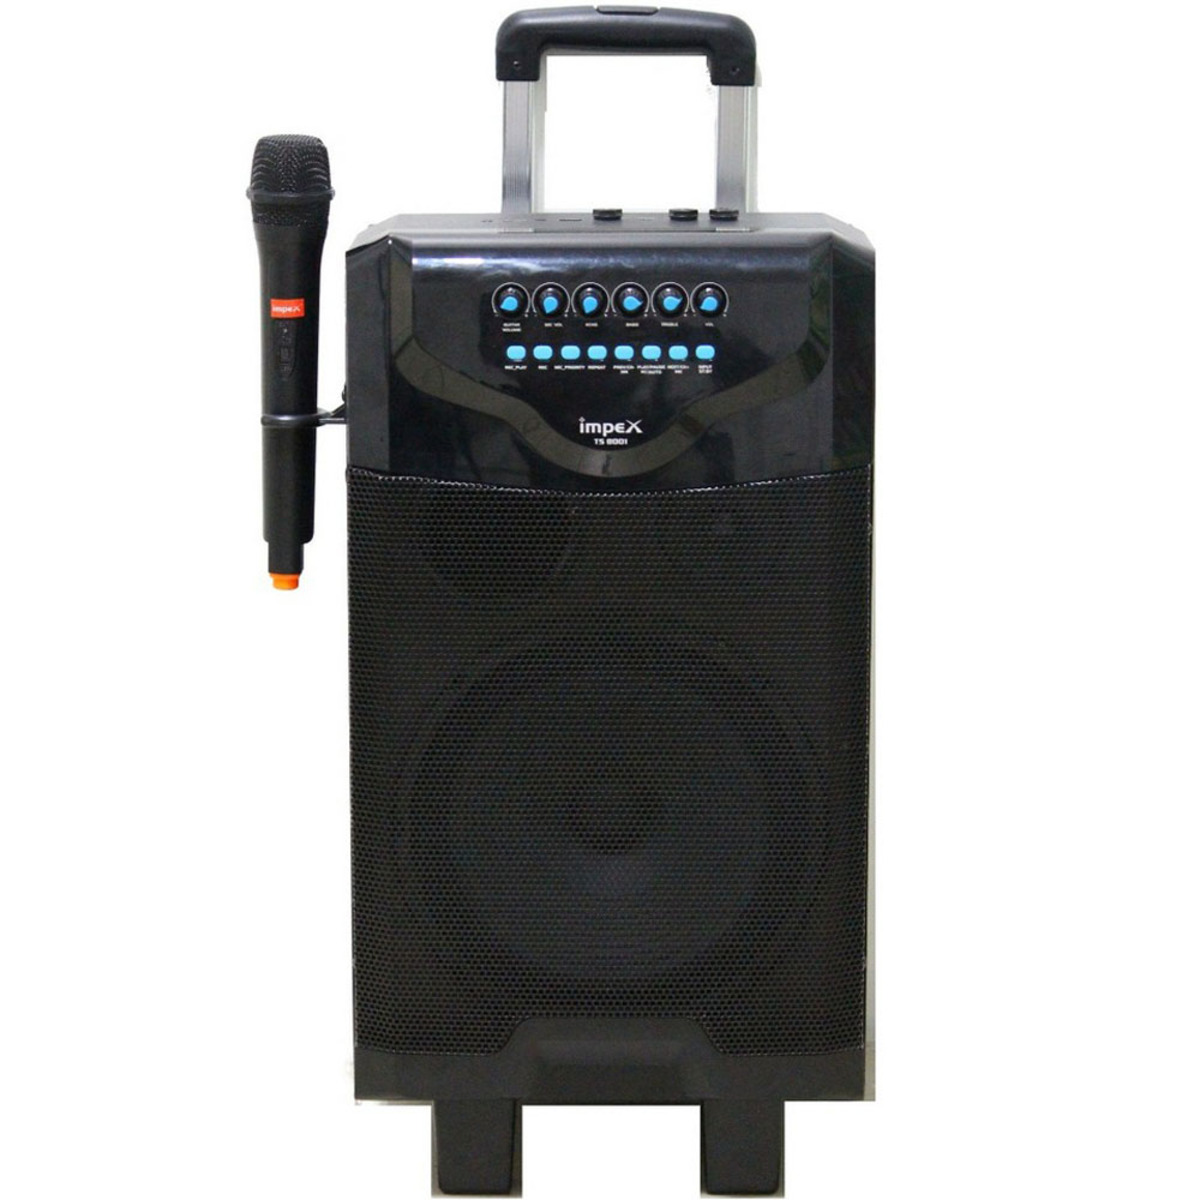 Impex Multimedia Trolley Speaker TS8001